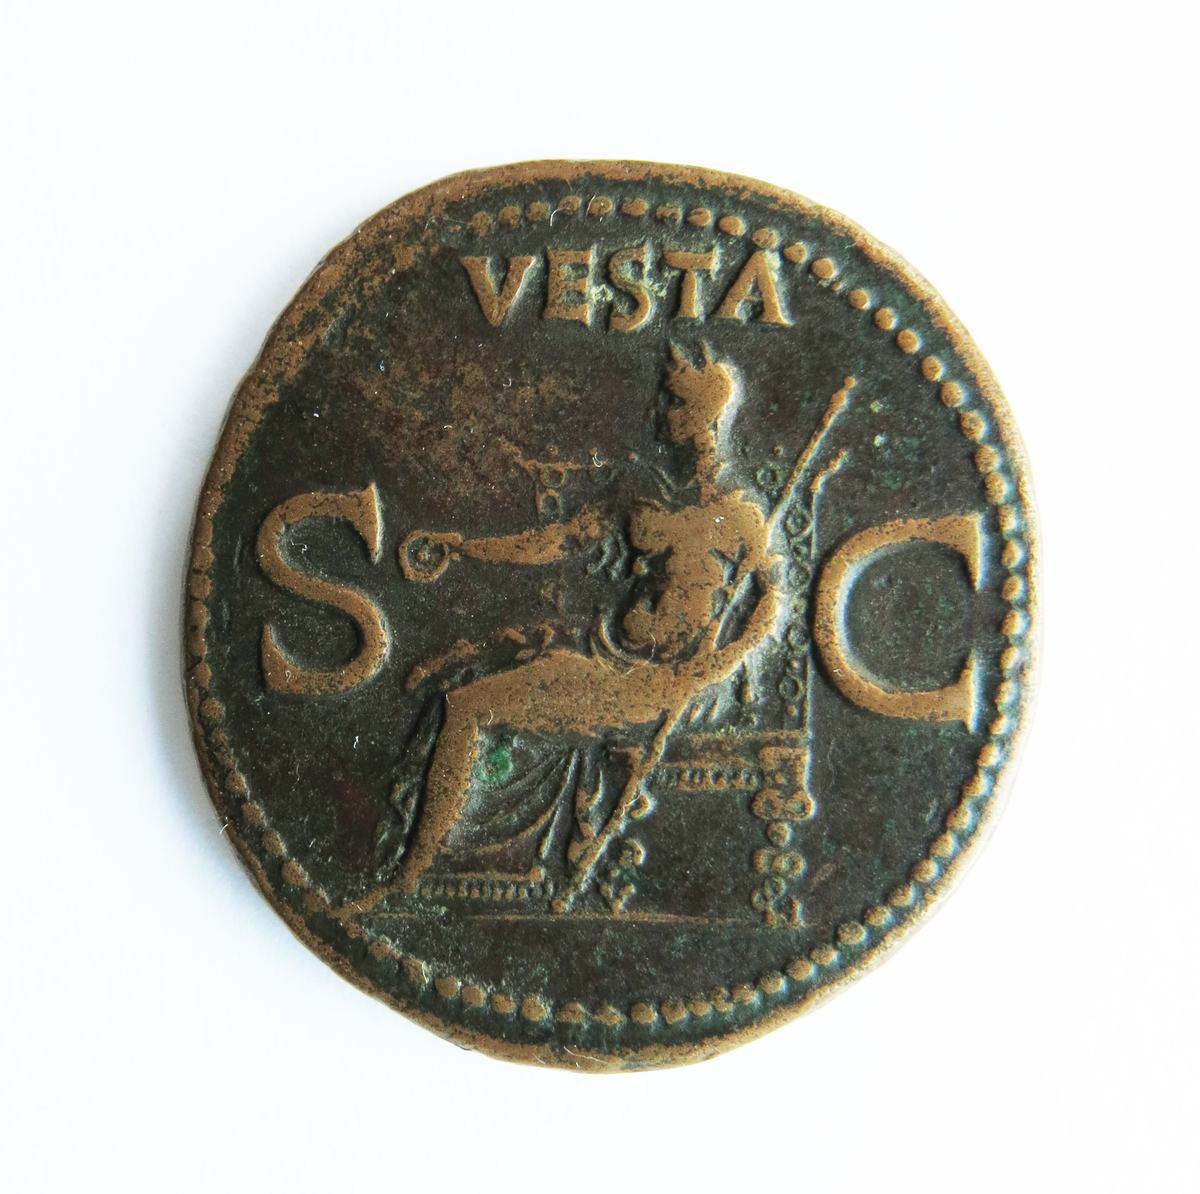 Motiv advers: Keiser Caligula i profil mot venstre.

Motiv revers: Vesta sittende på trone vendt mot venstre. I høyre holder hun en patena, i venstre et langt septer.